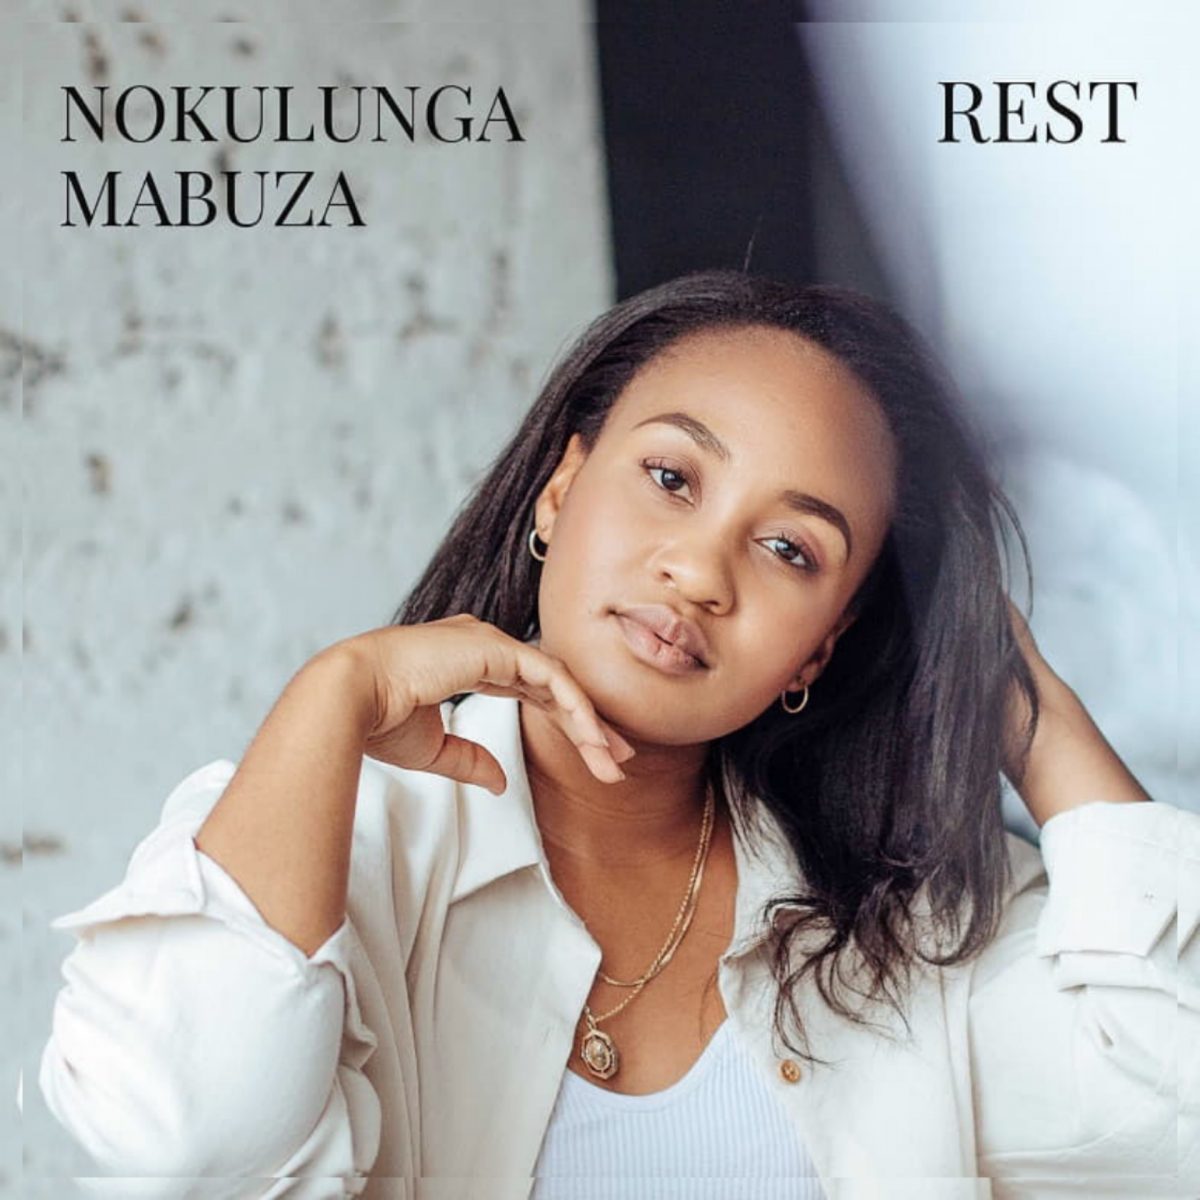 Rest By Nokulunga Mabuza